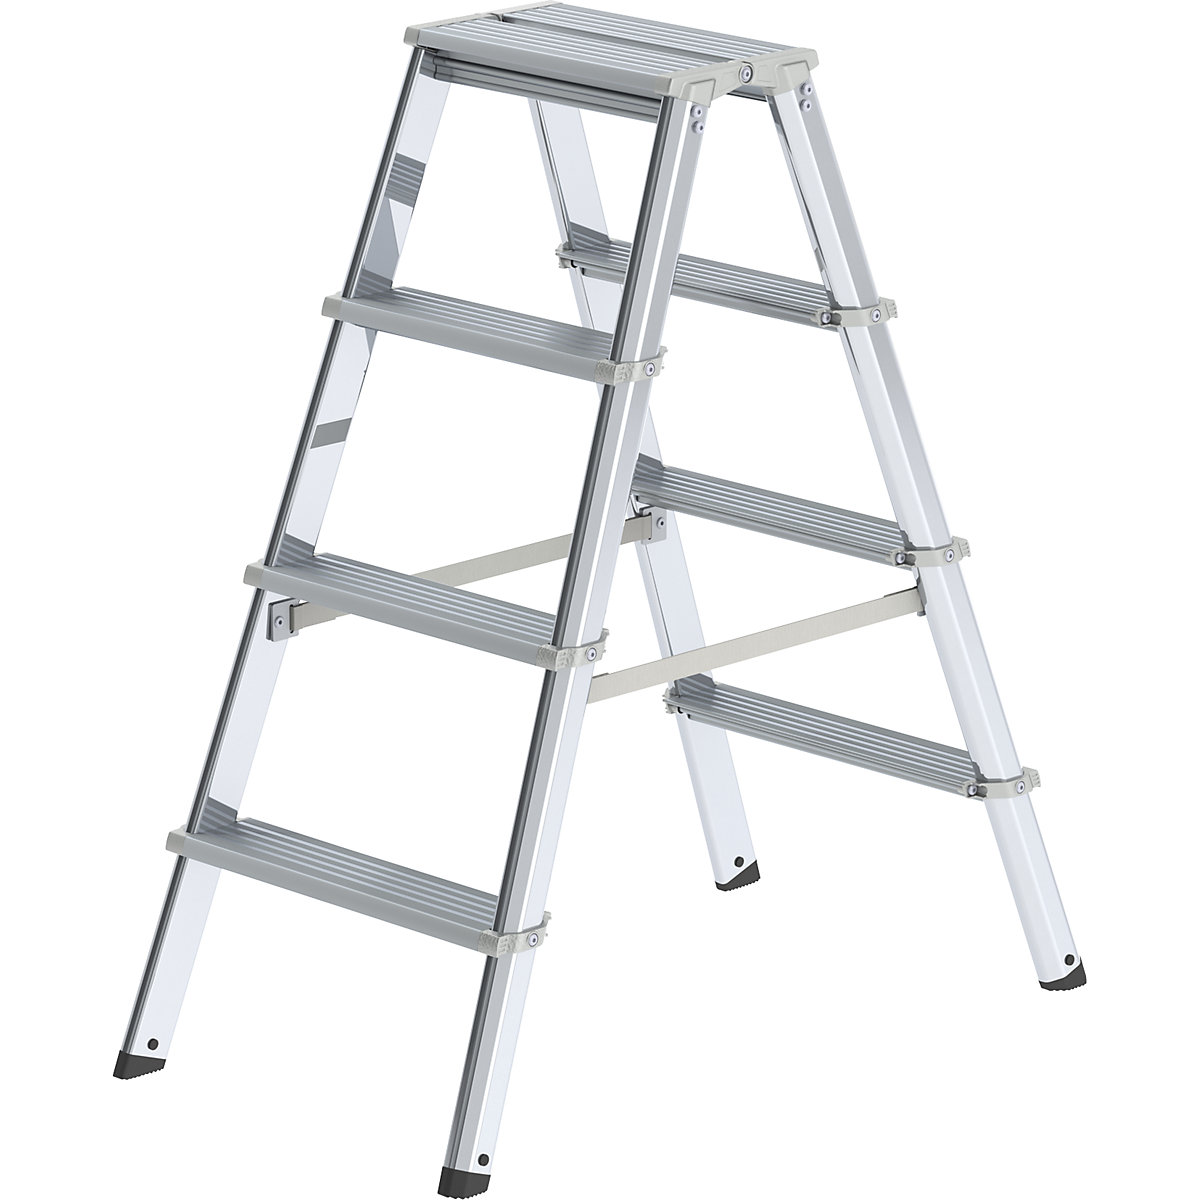 MUNK – Escalera tipo tijera de peldaños planos de aluminio, de ascenso por ambos lados, con larguero ergonómico, 2 x 4 peldaños, altura de trabajo 2500 mm